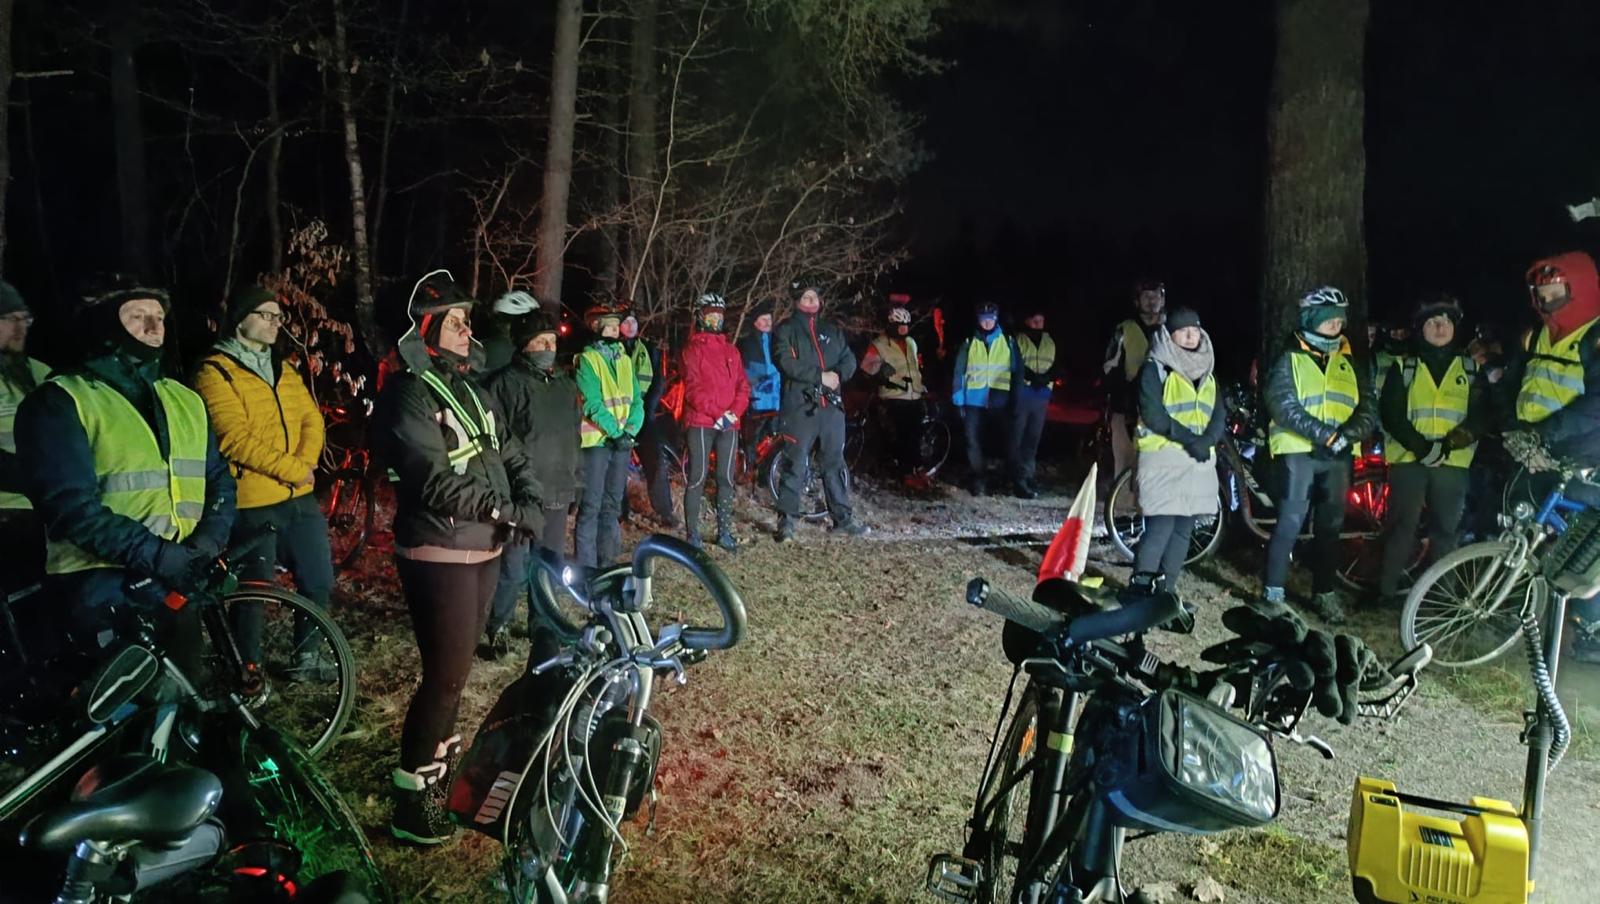 Rowerowa Droga Krzyżowa | Grupa kolarzy stoi w półkolu, modli się. Z przodu zaparkowane rowery, w tle las. Zdjęcie nocne.jpg